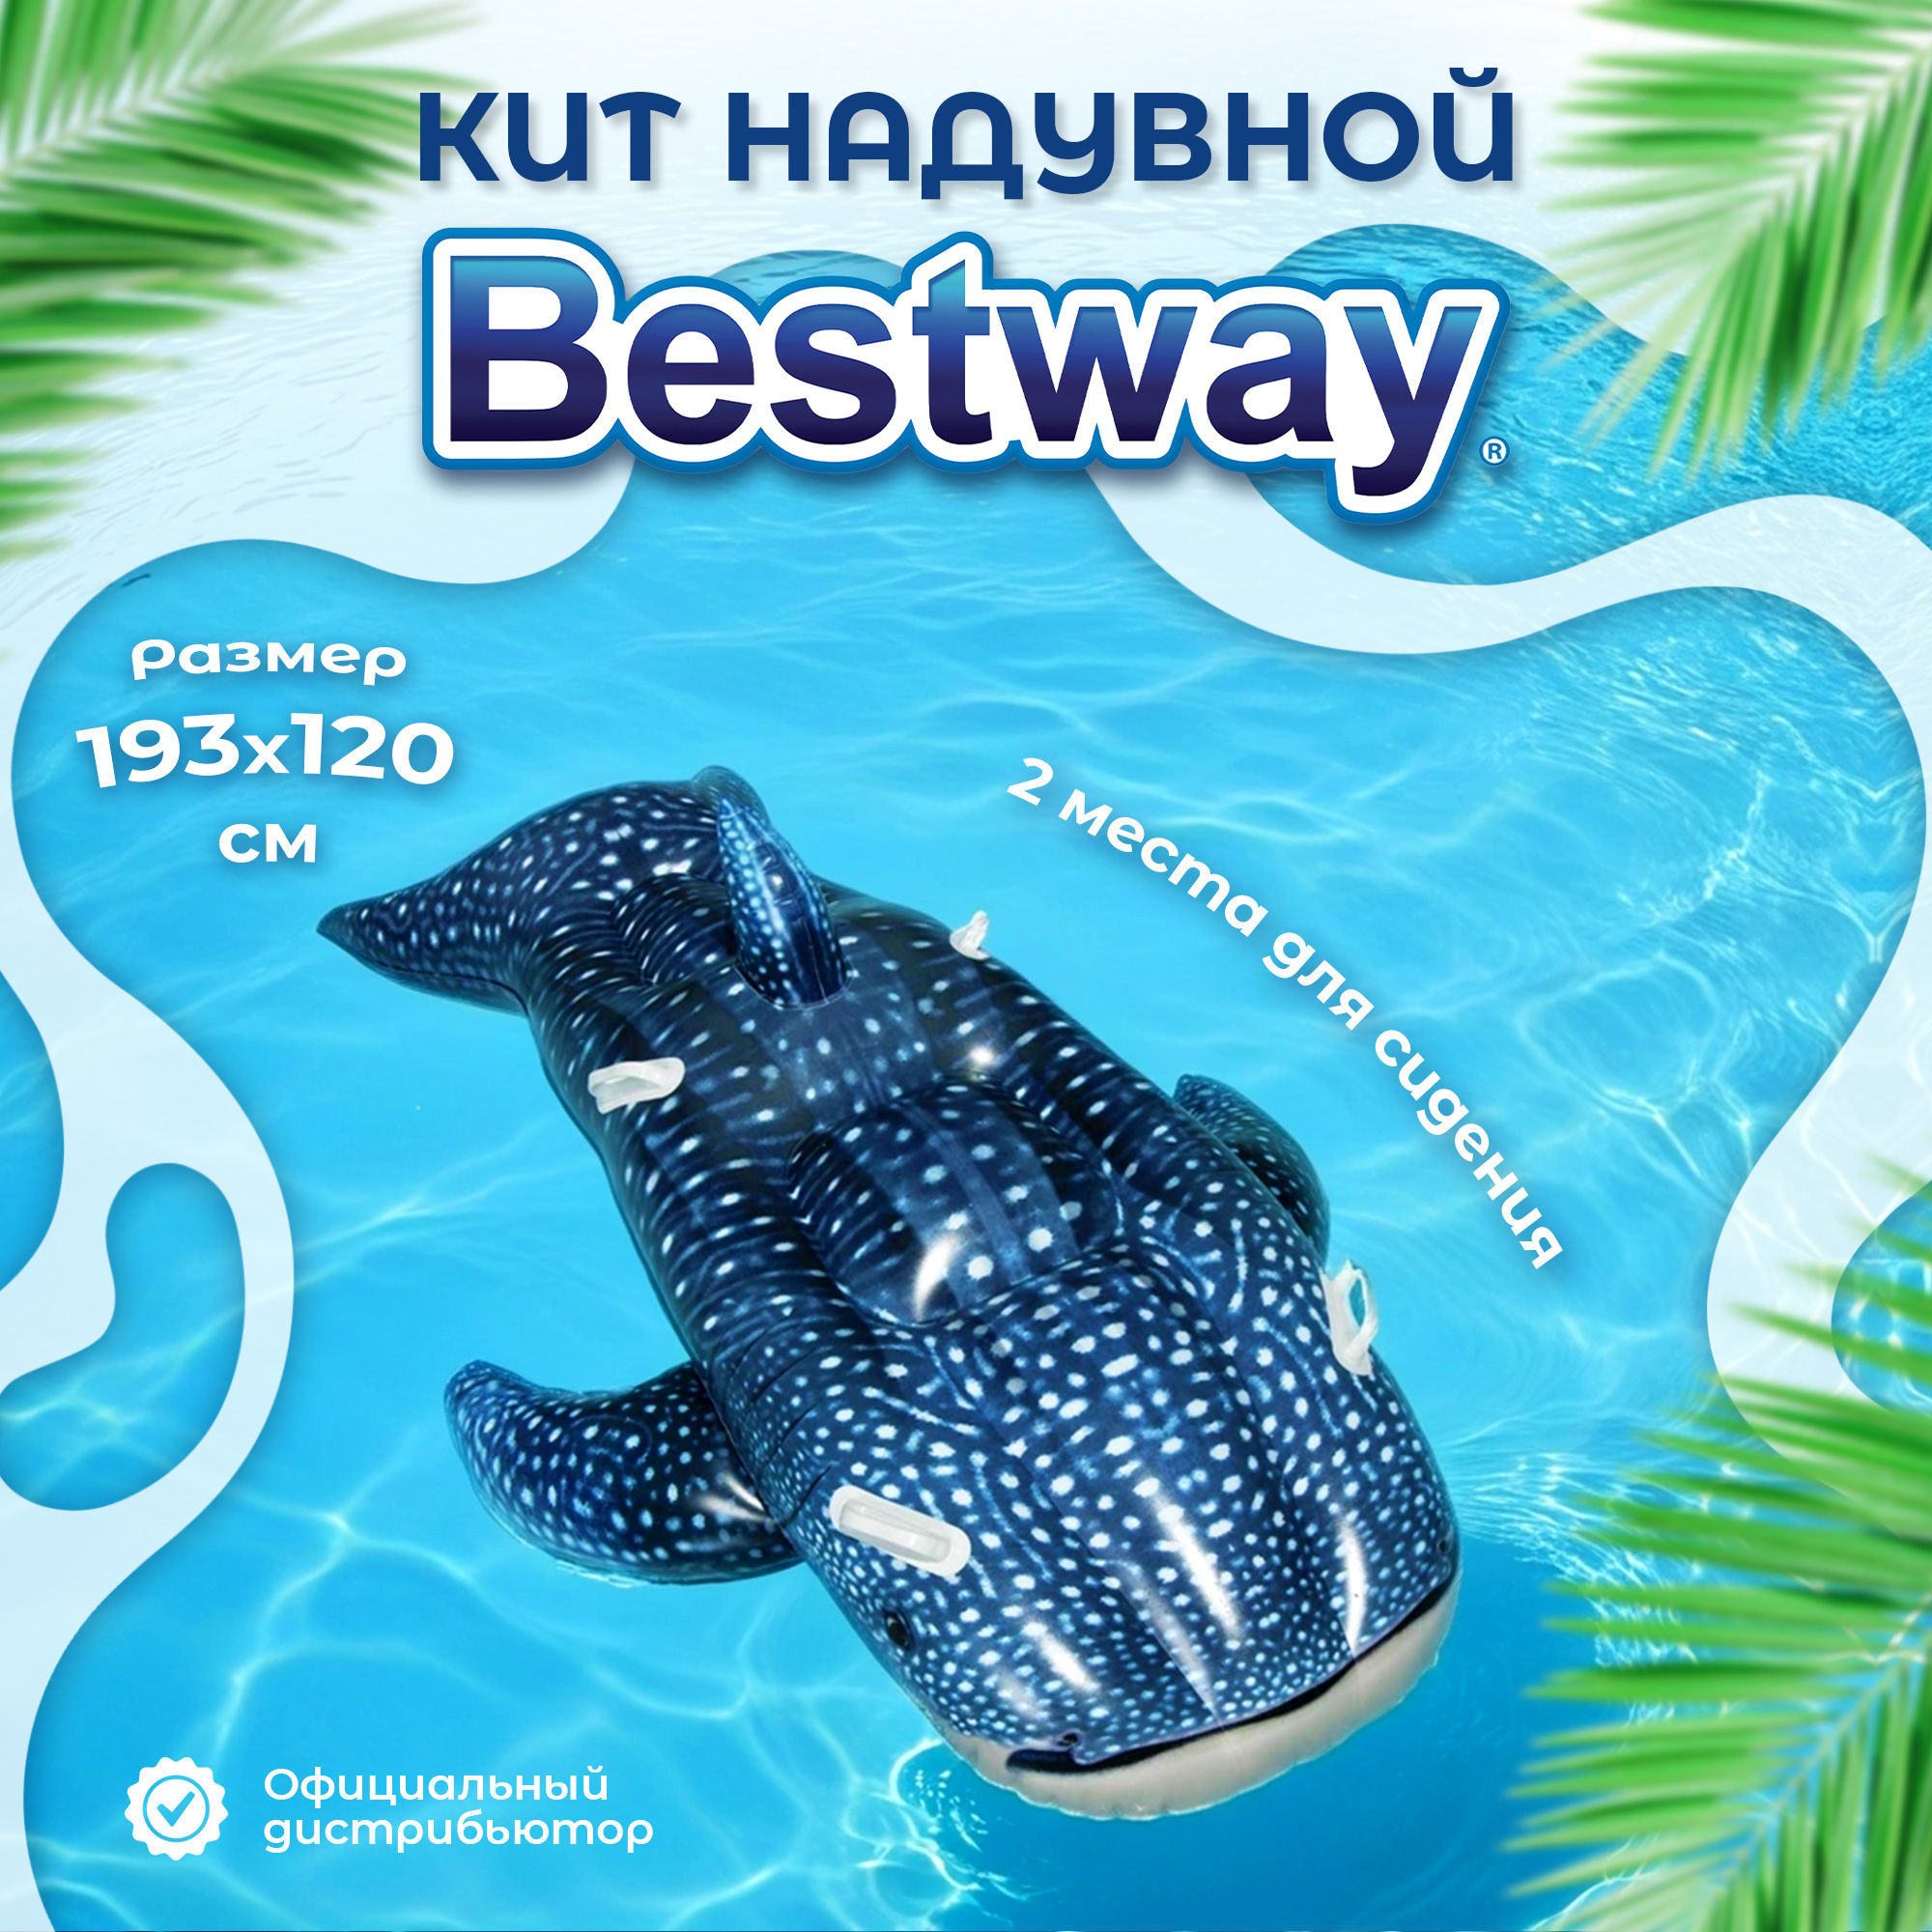 Игрушка Bestway надувной Кит 1,93x1,2 м, цвет синий - фото 2